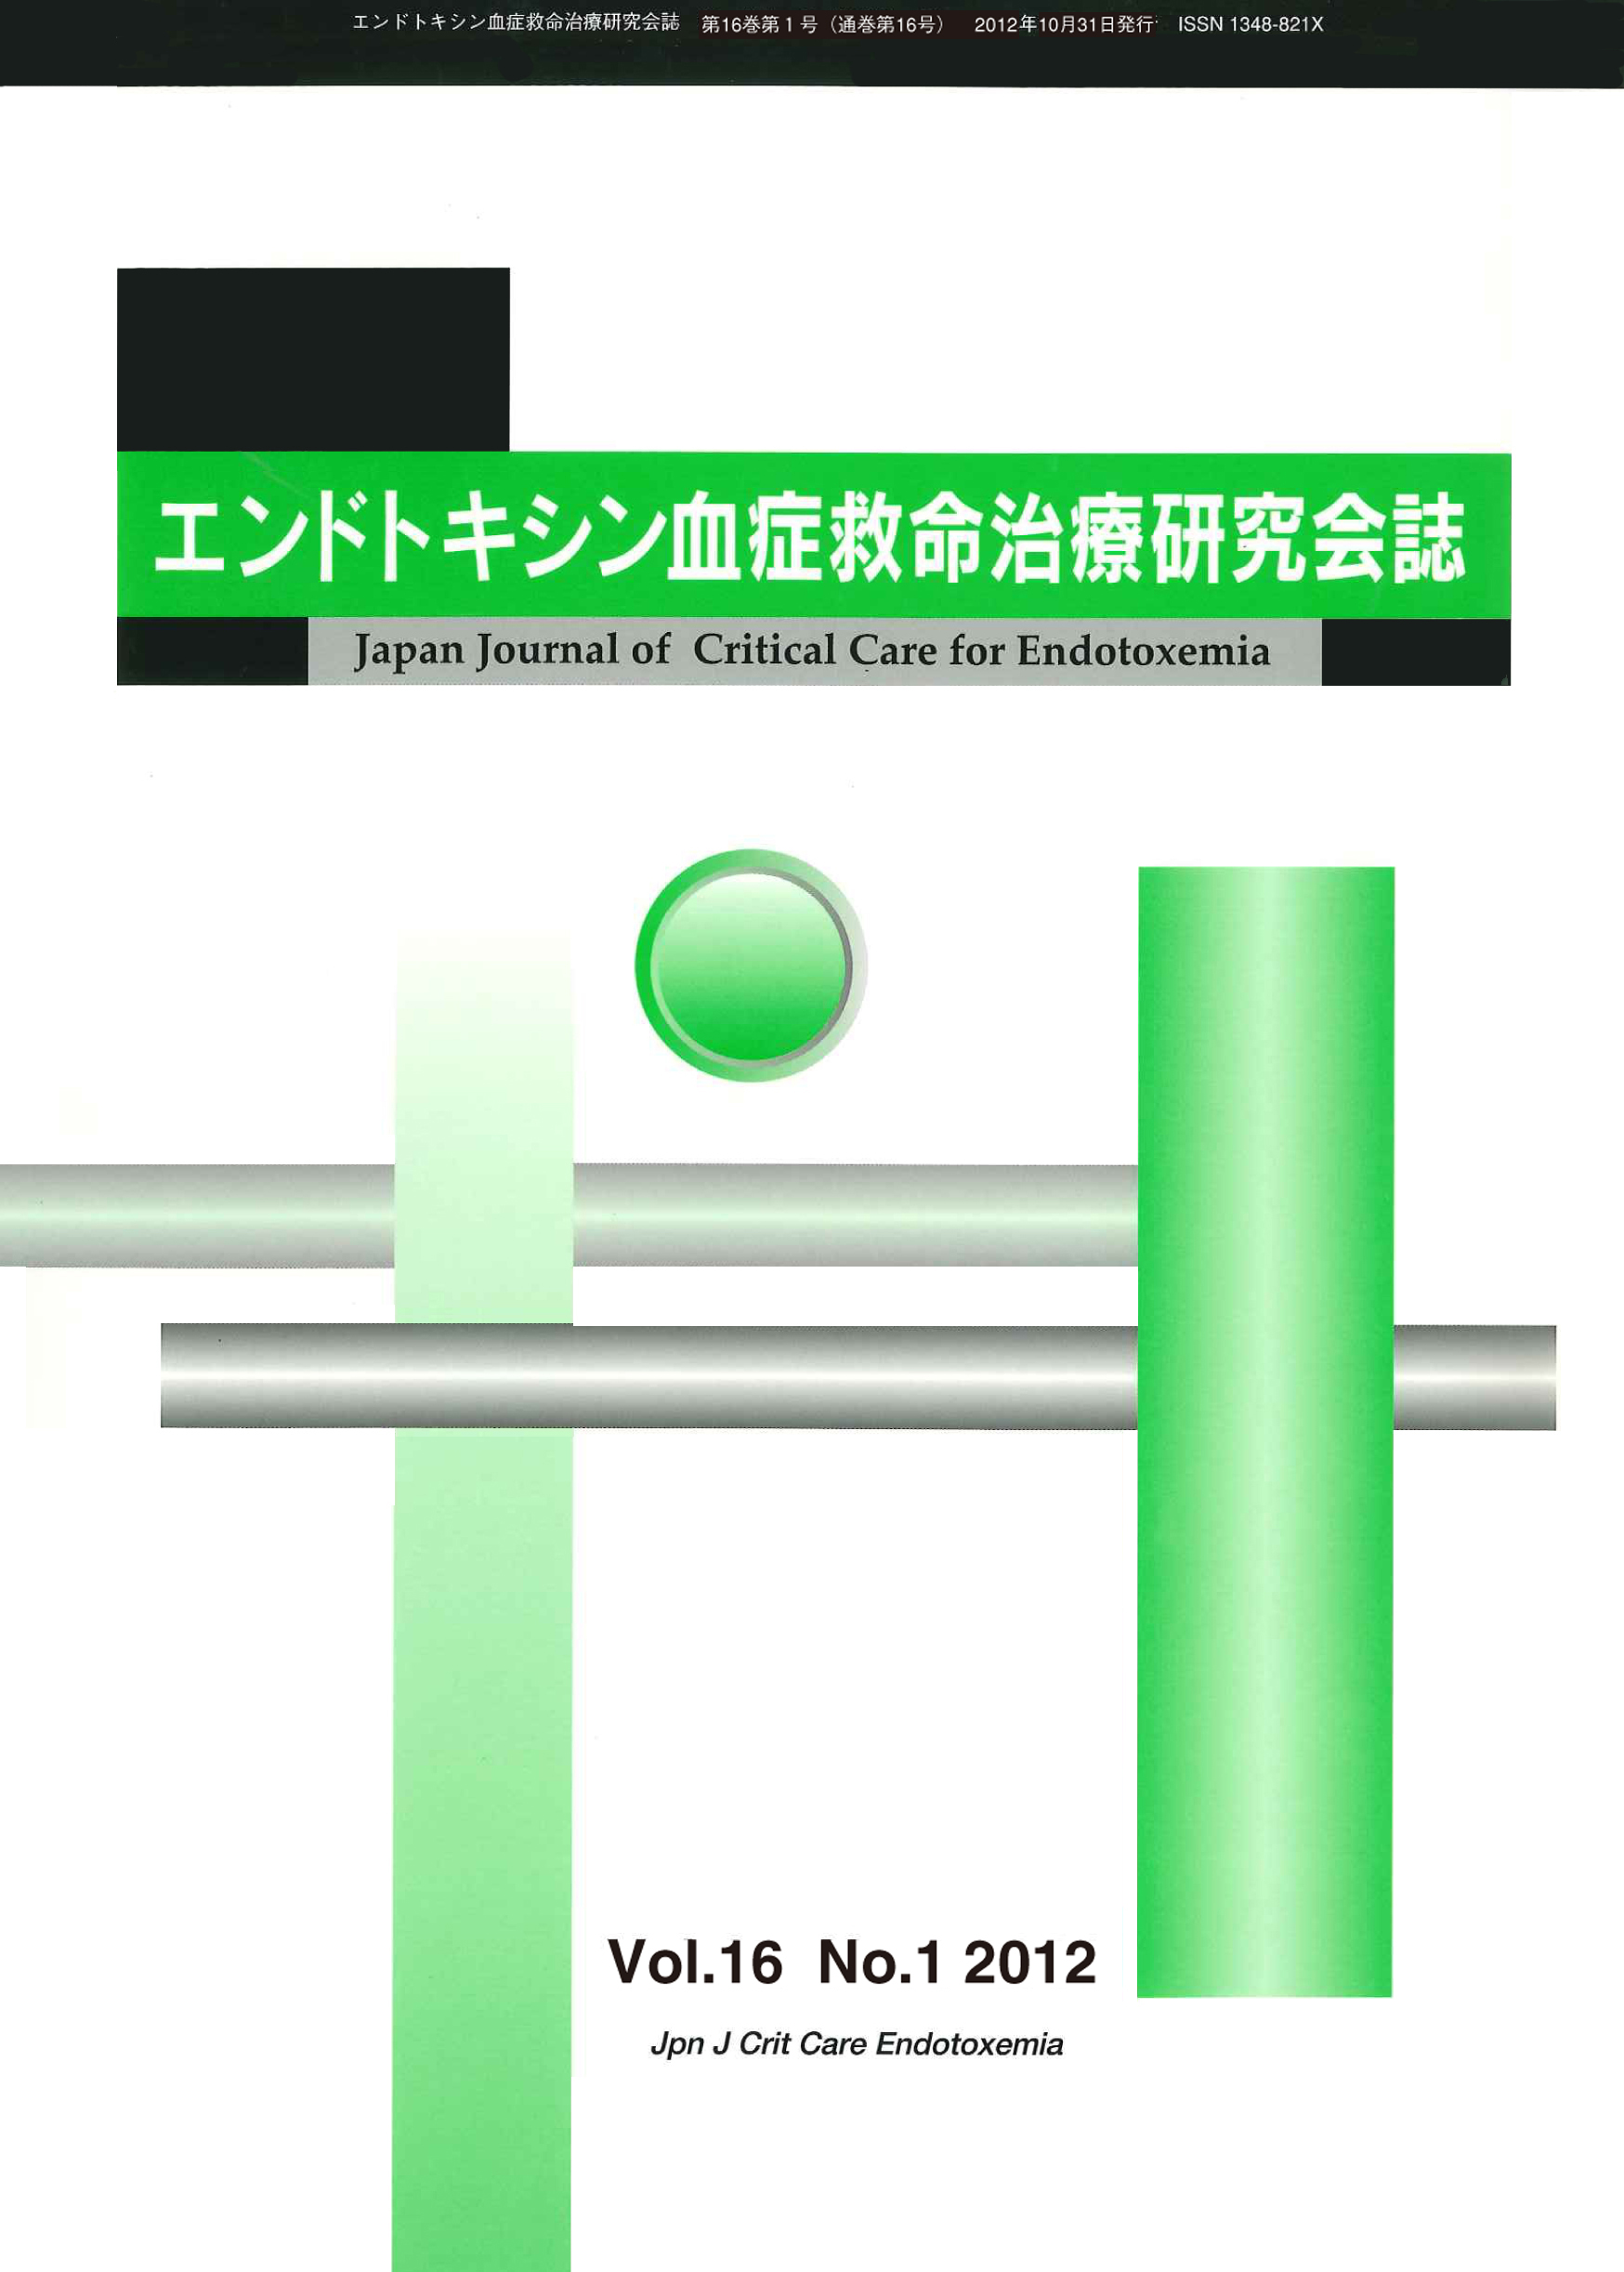 エンドトキシン血症救命治療研究会誌 Vol.16 No.1 2012